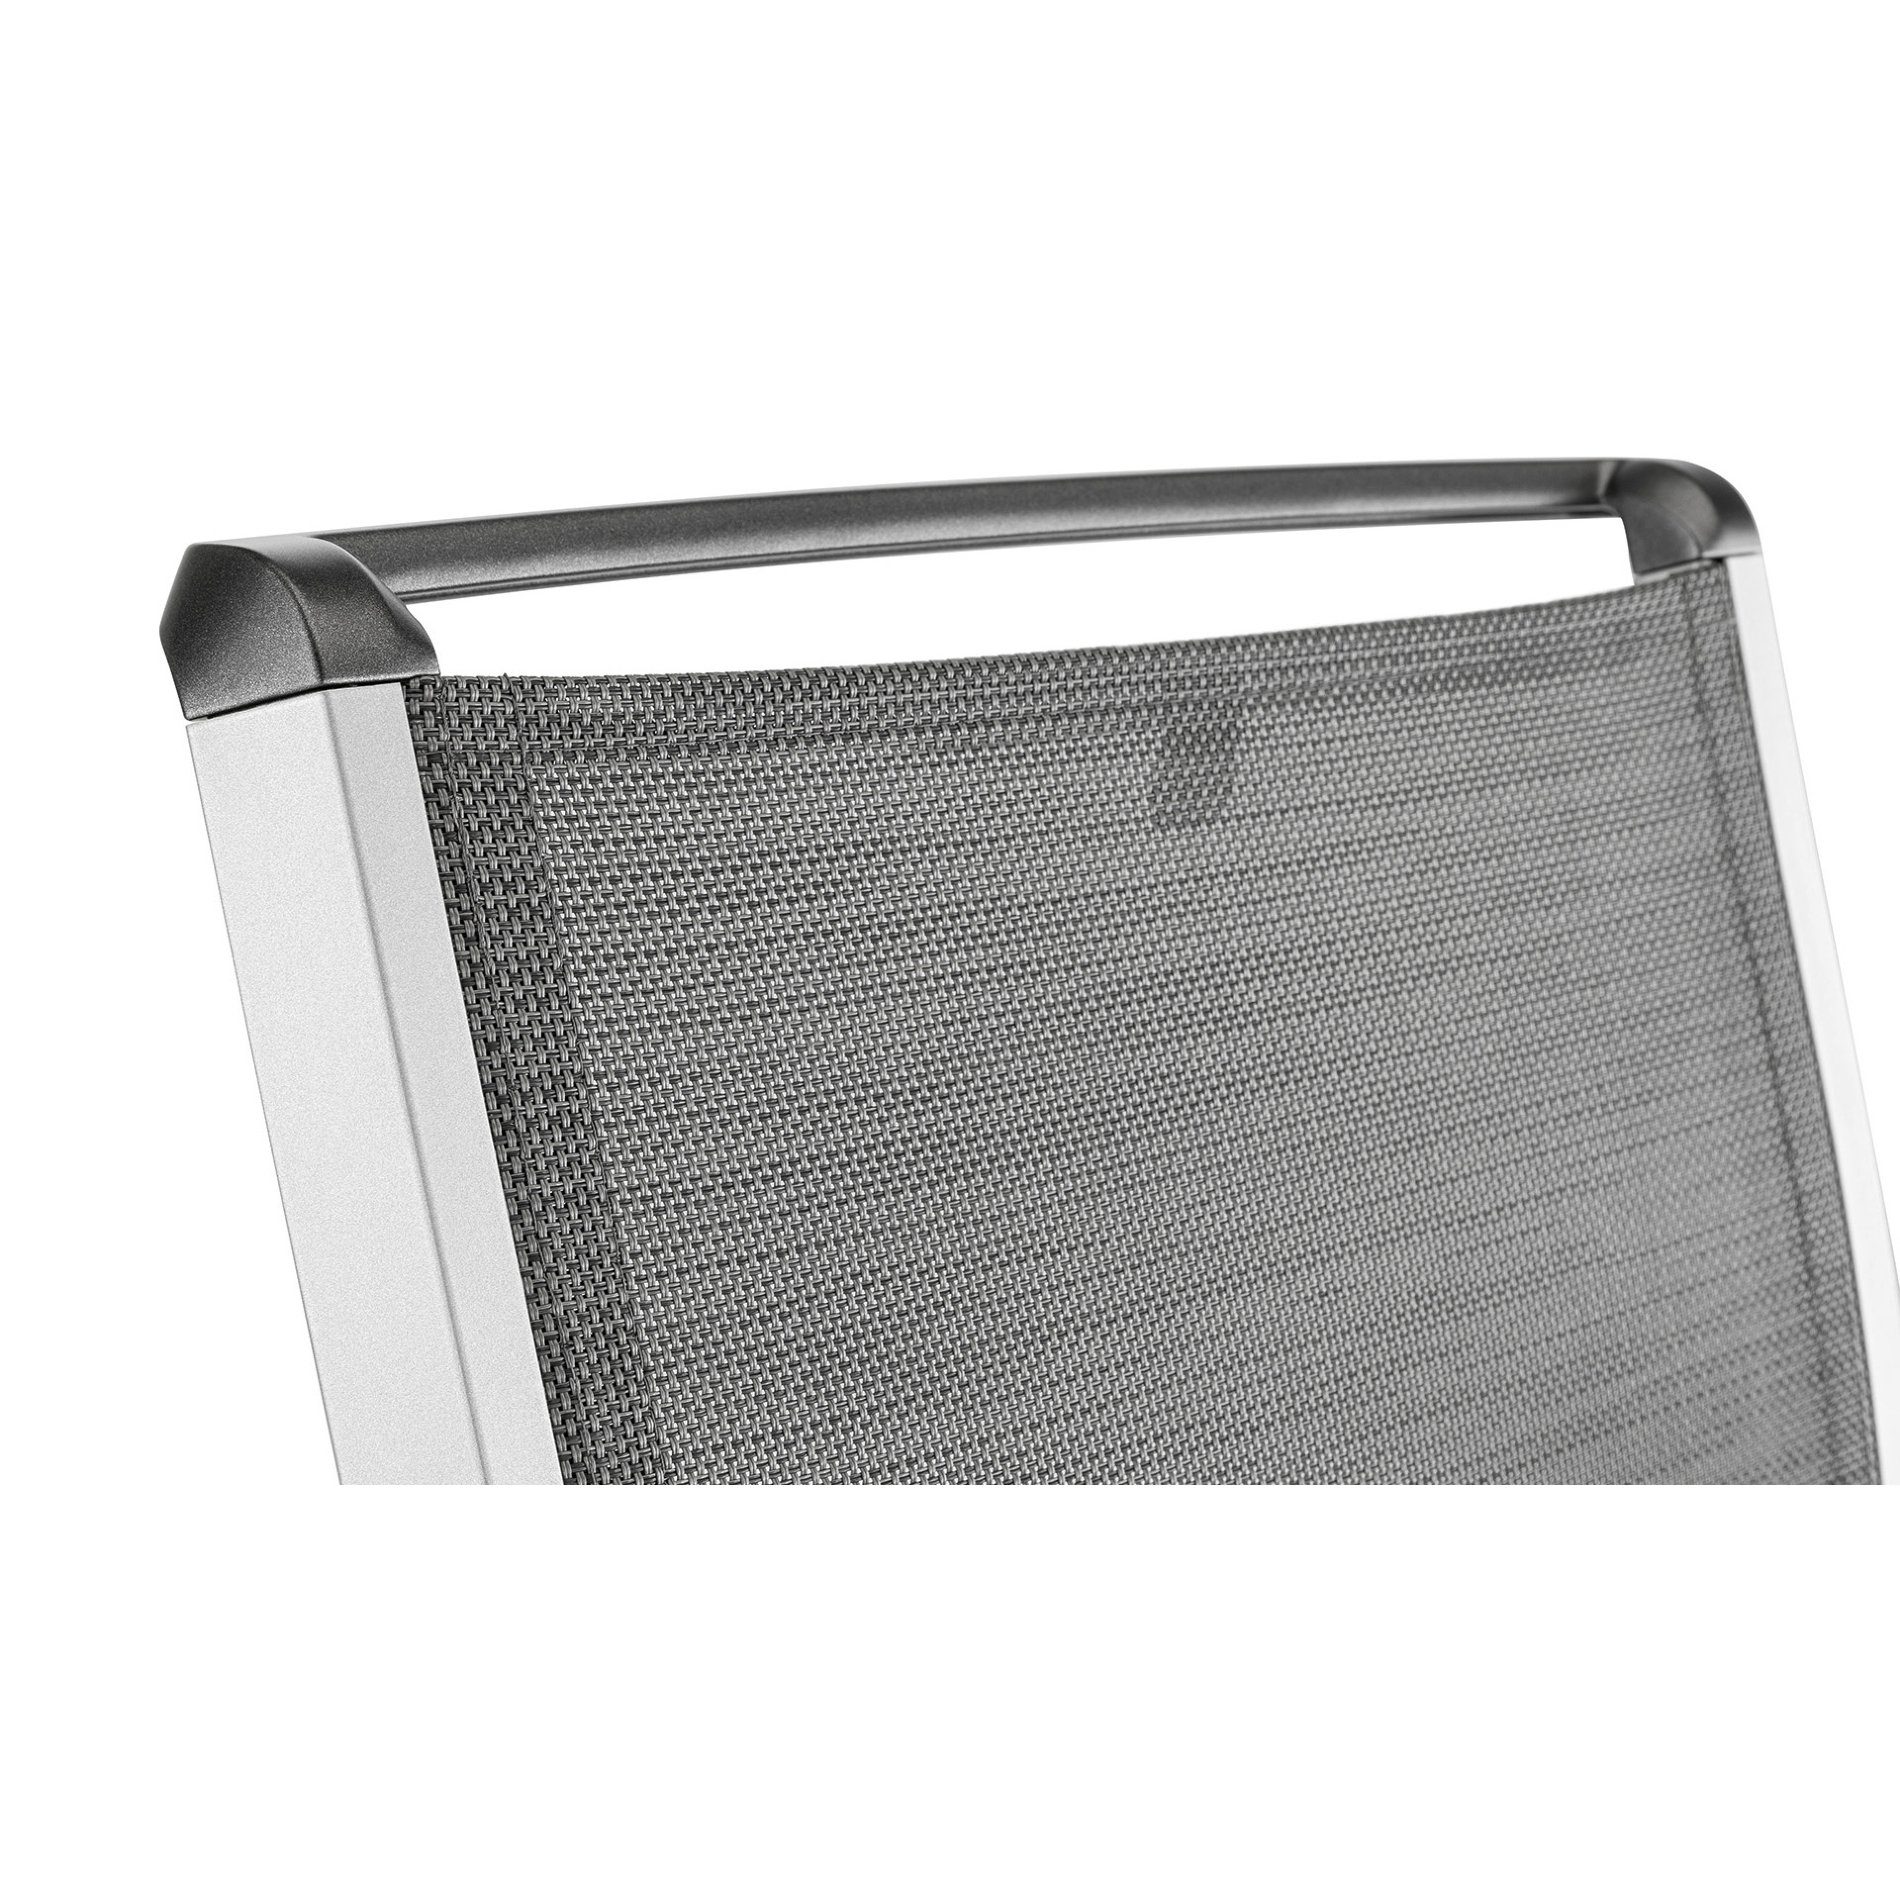 Kettler "Forma II" Stapelsessel, Gestell Aluminium silber, Sitzfläche Textilgewebe graphit